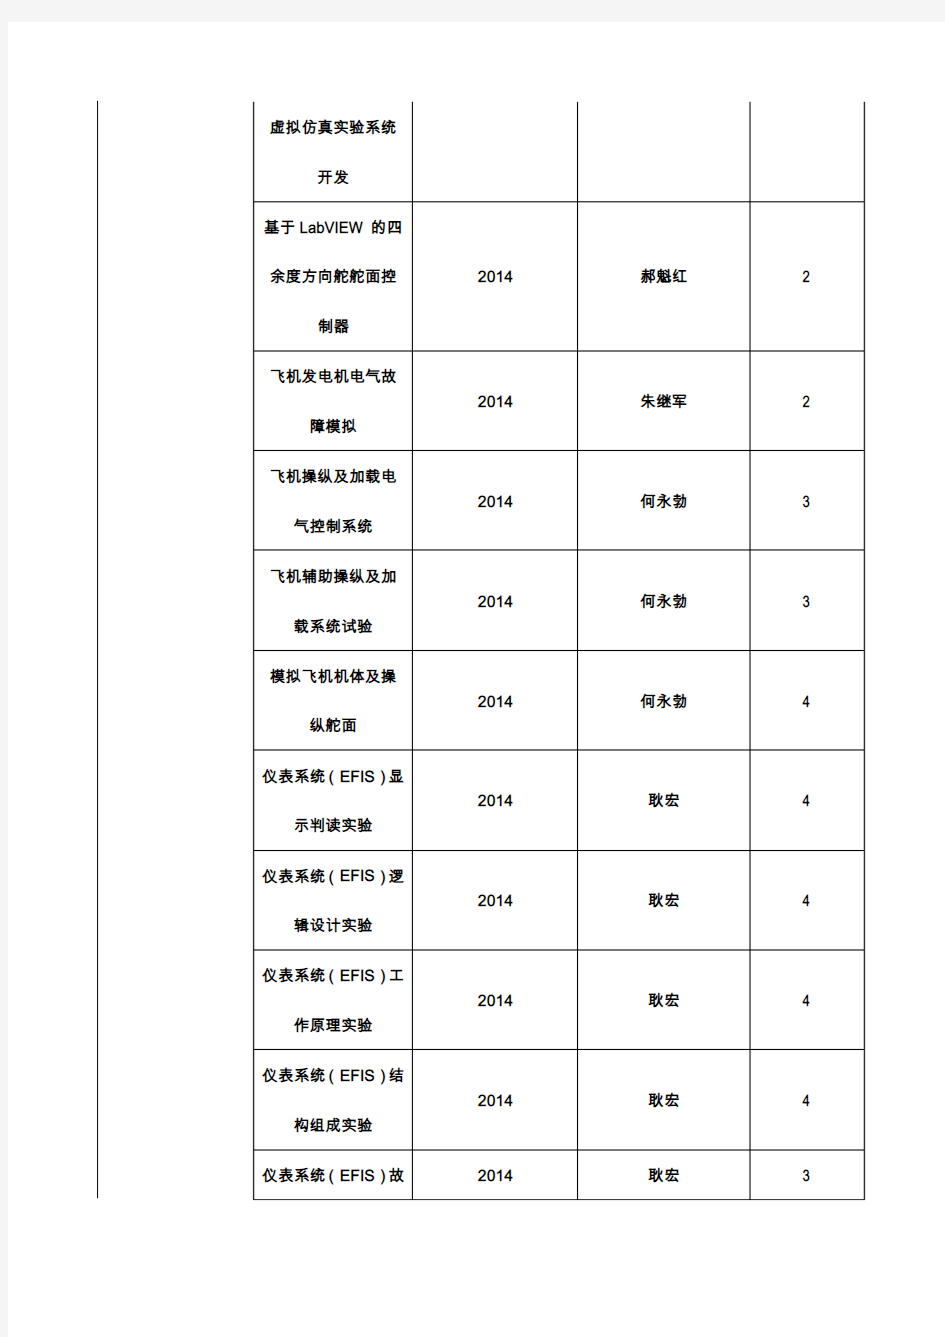 天津教学示范中心建设单位成果明细表-中国民航大学